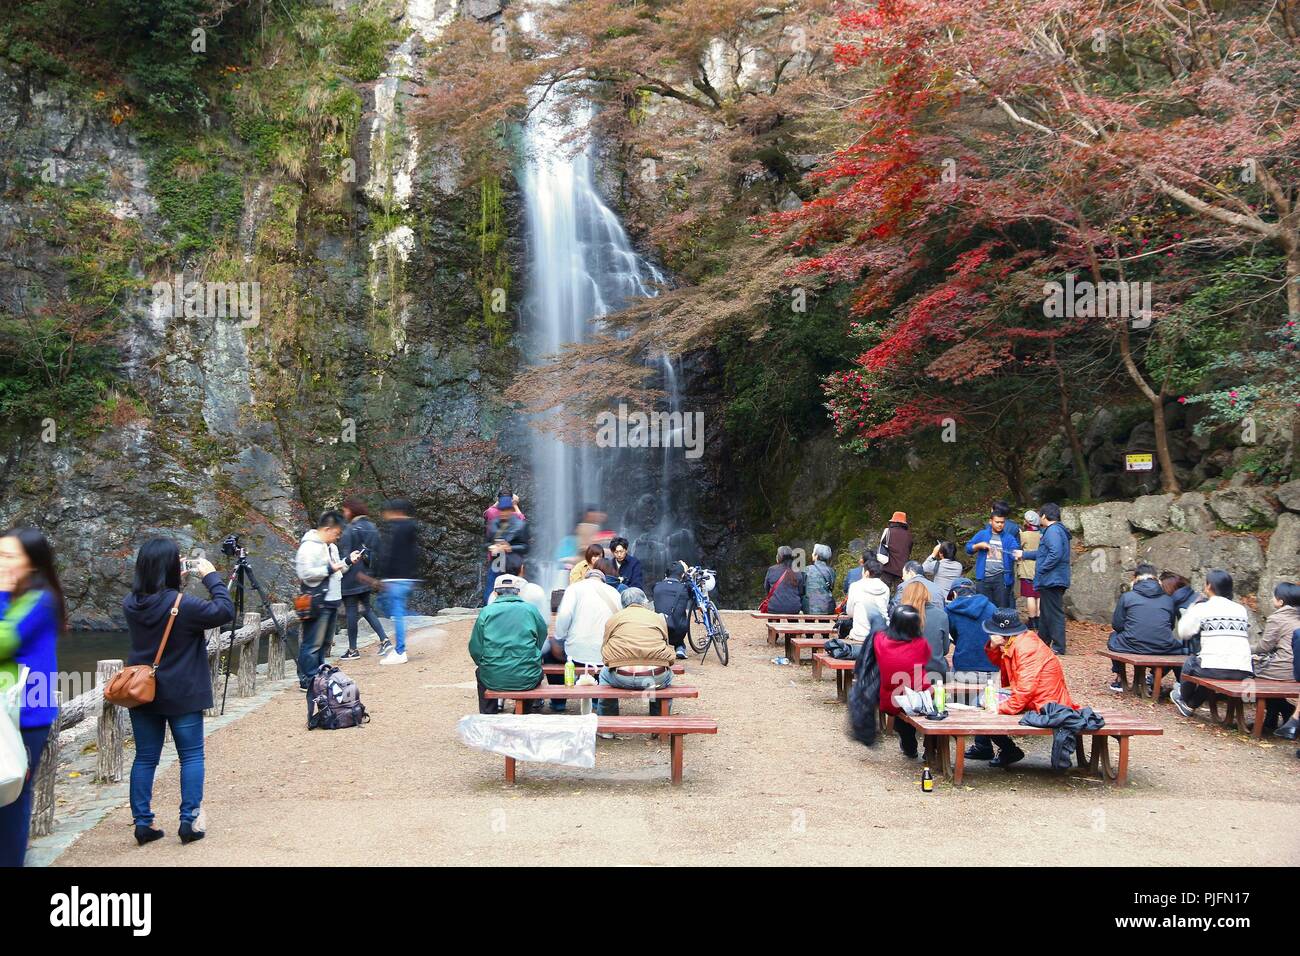 MINOO, Giappone - 22 novembre 2016: la gente visita Meiji no Mori Mino Quasi-National parco vicino Osaka, Giappone. Il parco è famoso per le sue spettacolari autunno Foto Stock